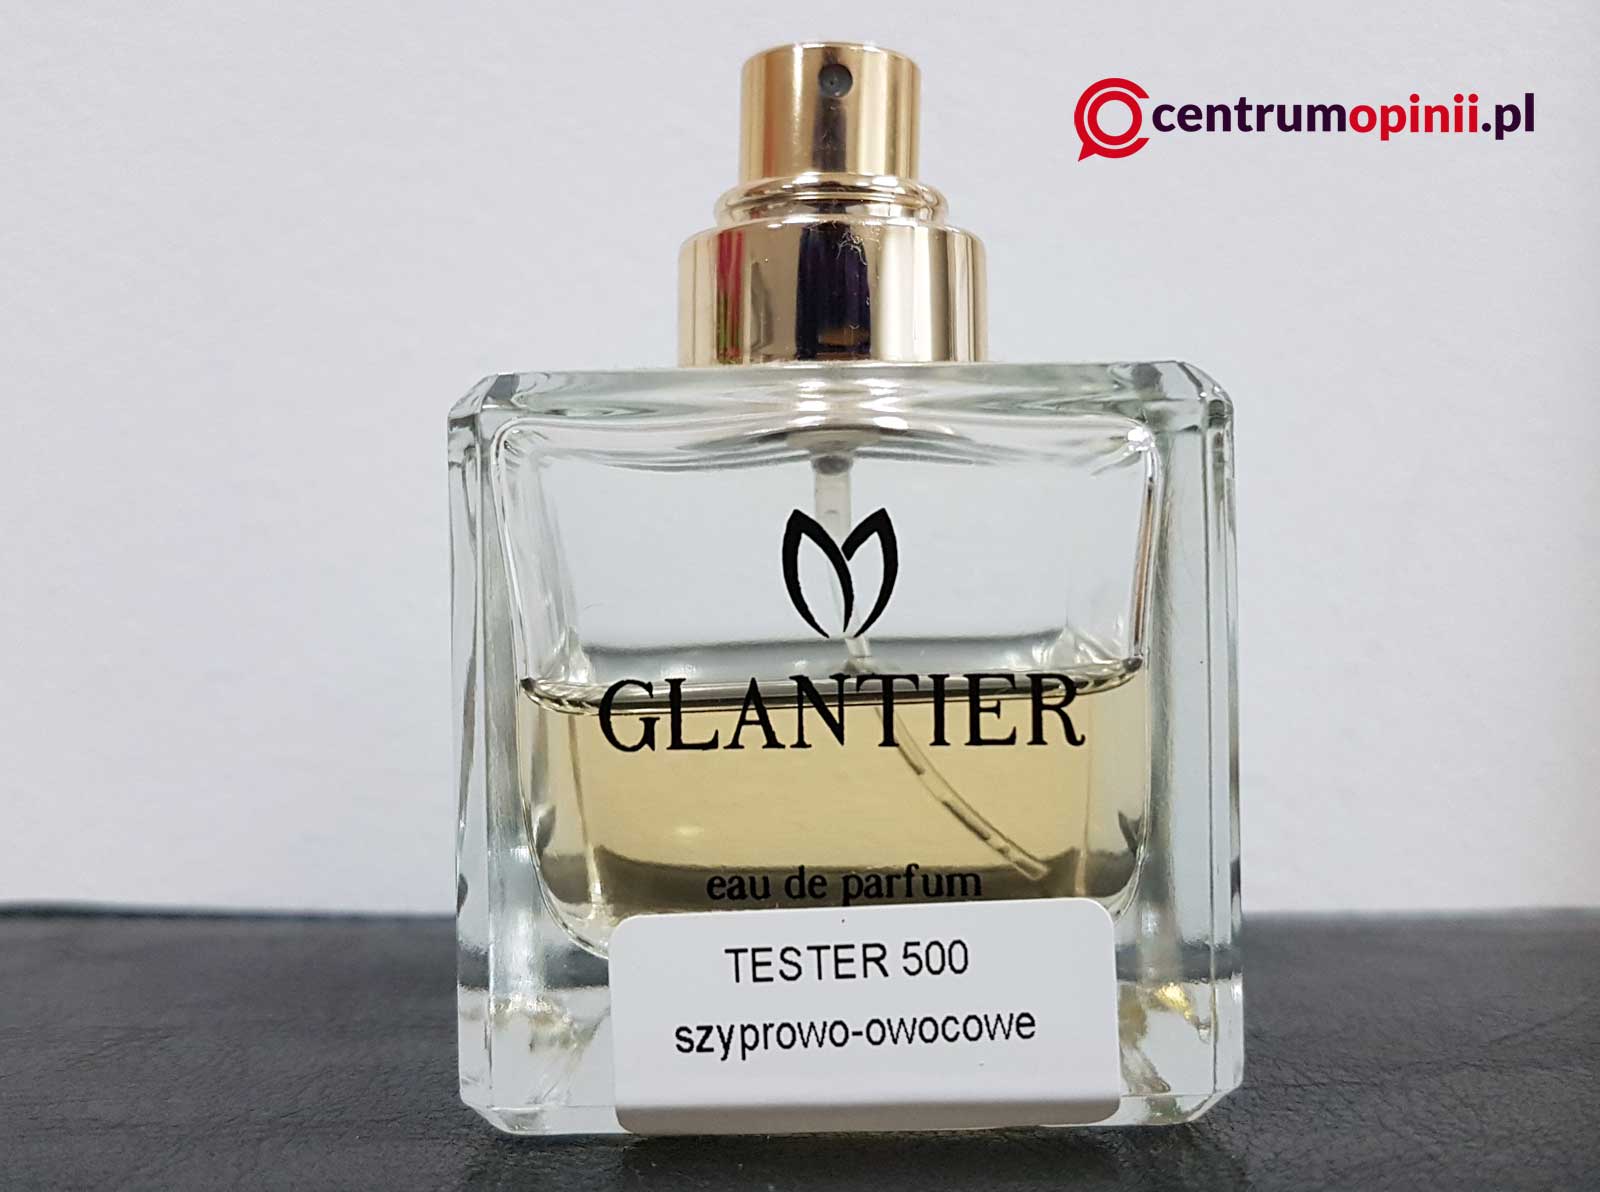 Perfumy Glantier opinie test recenzja